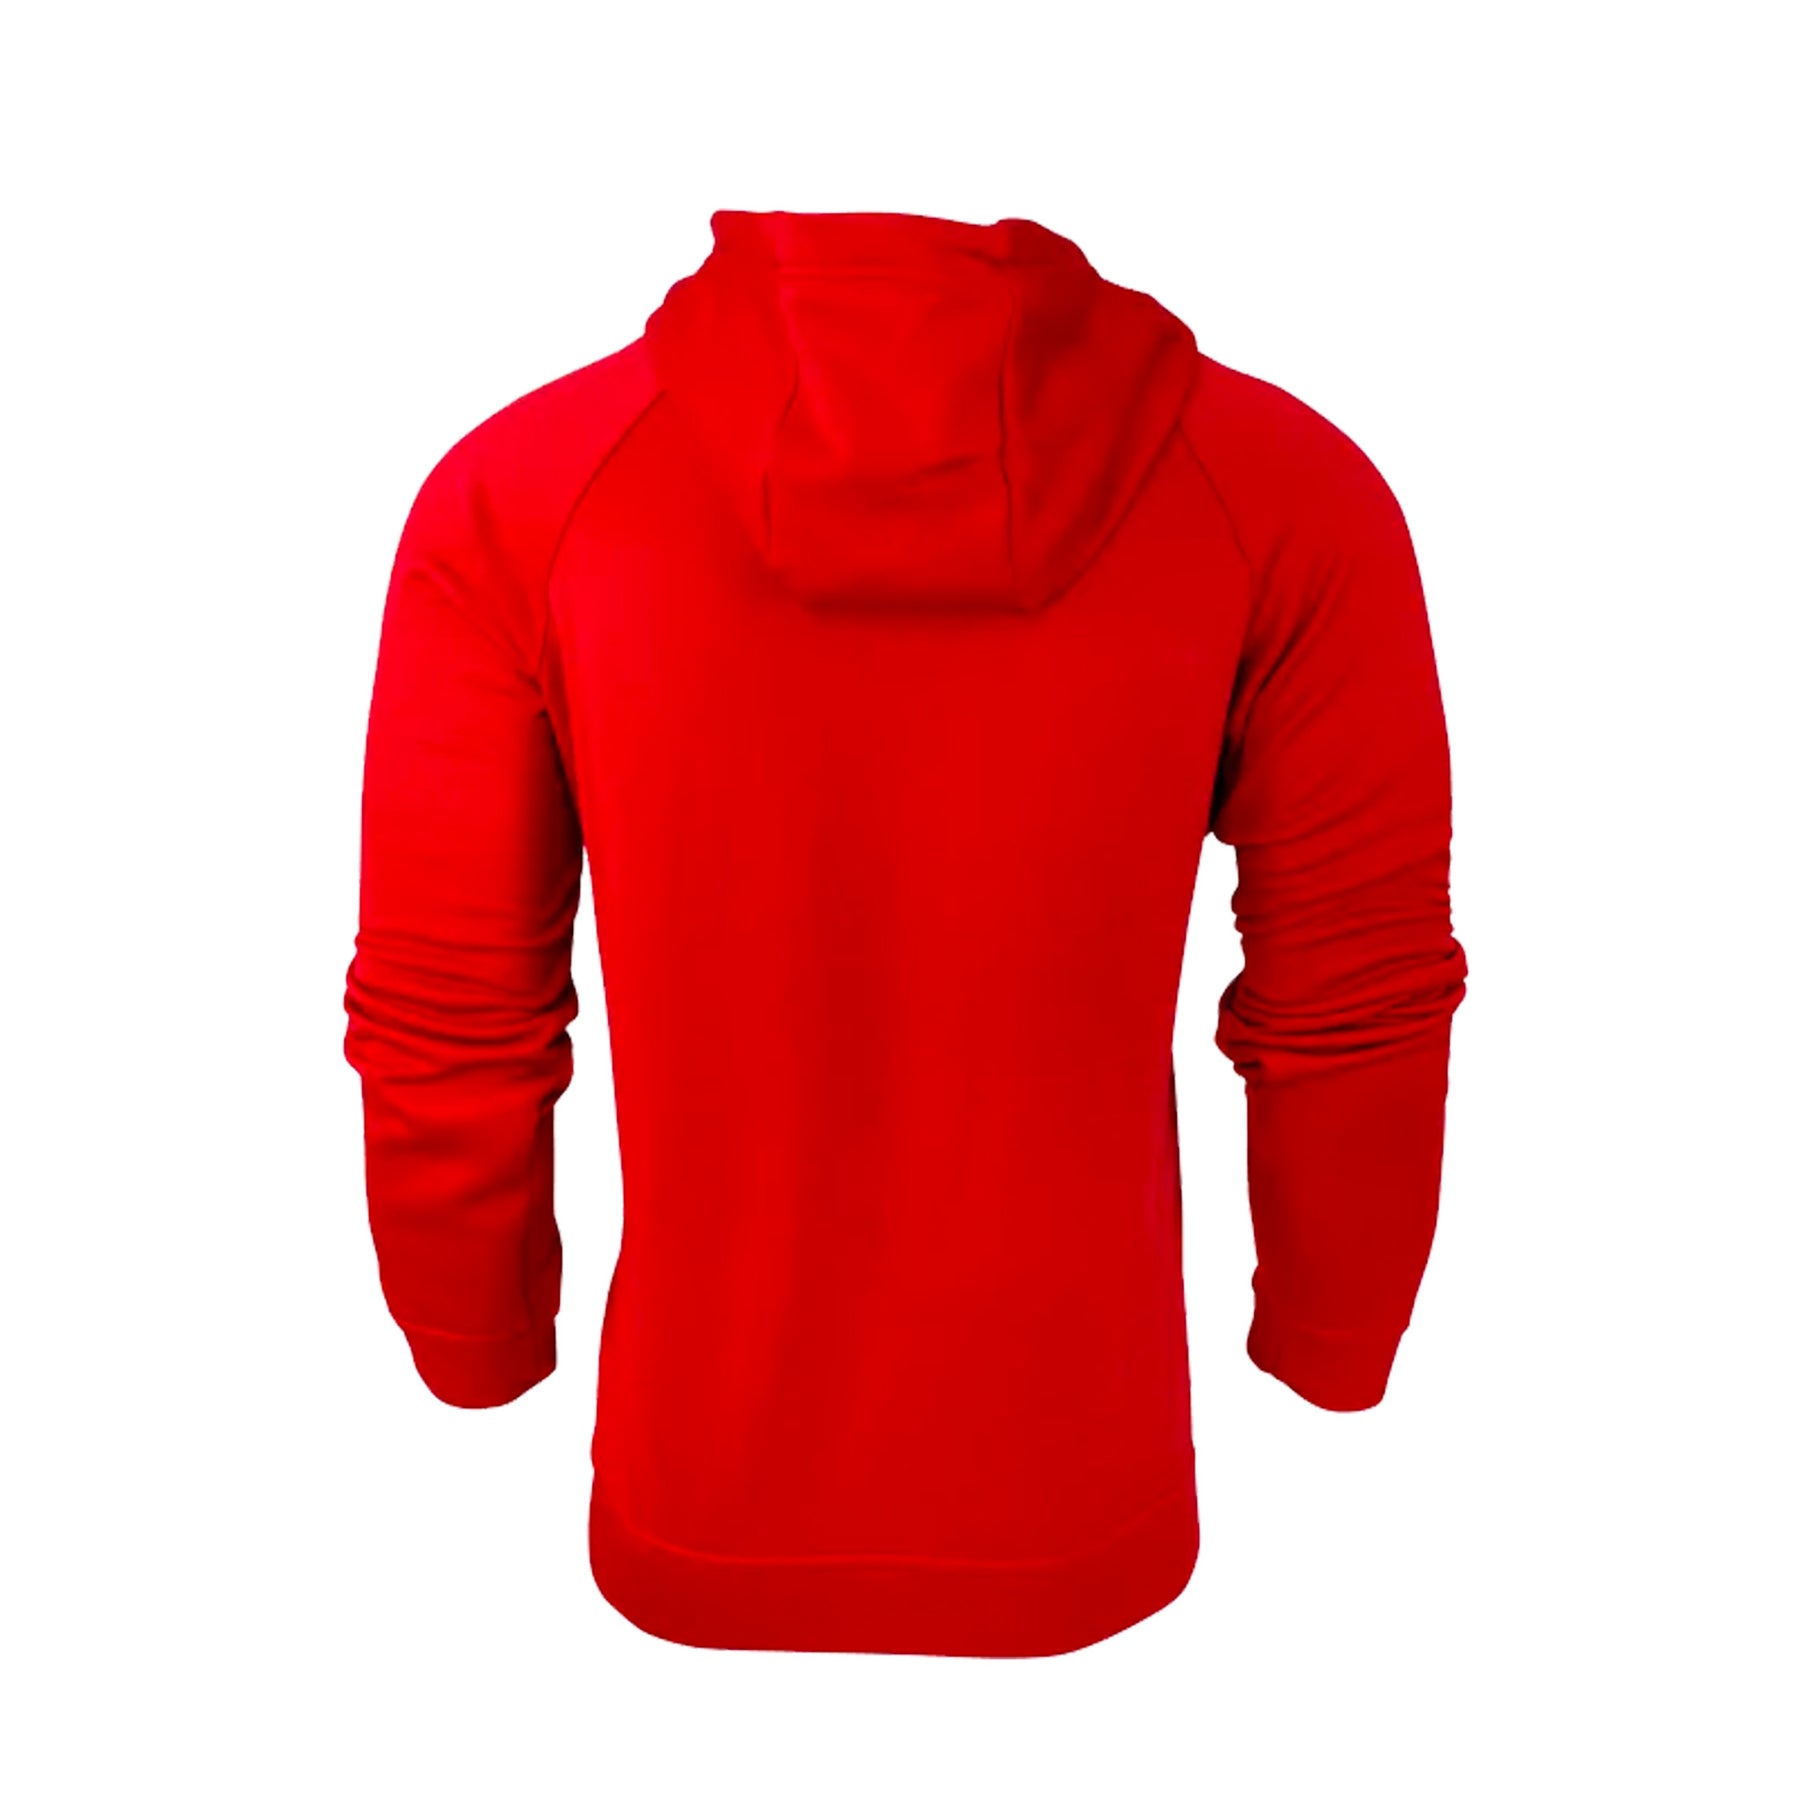 aussie pacific crusader hoodie in red